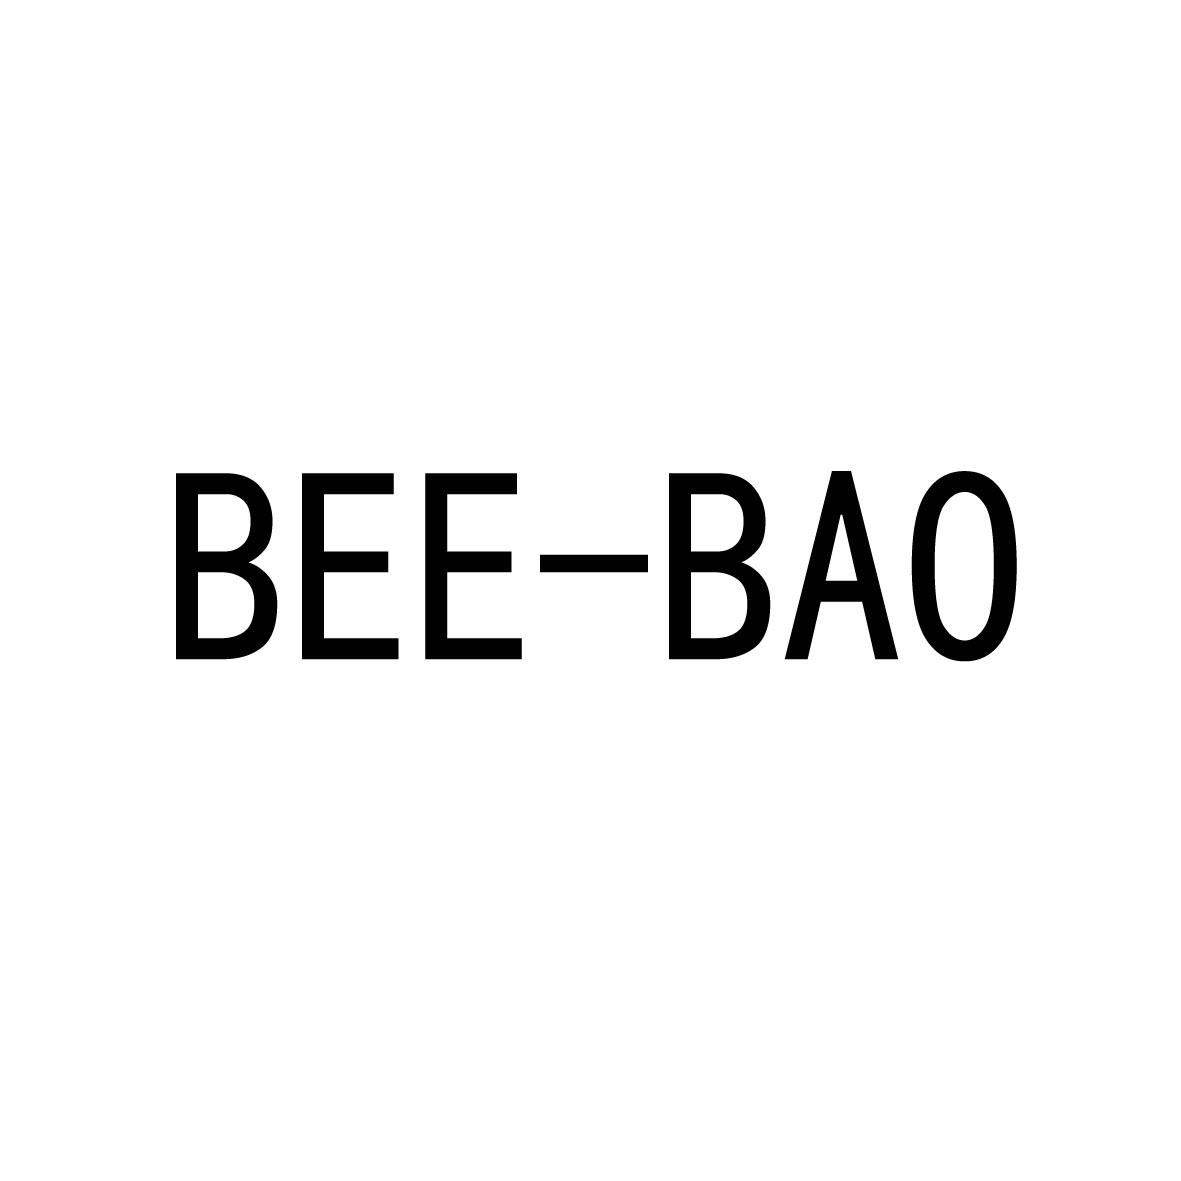 BEE-BAO